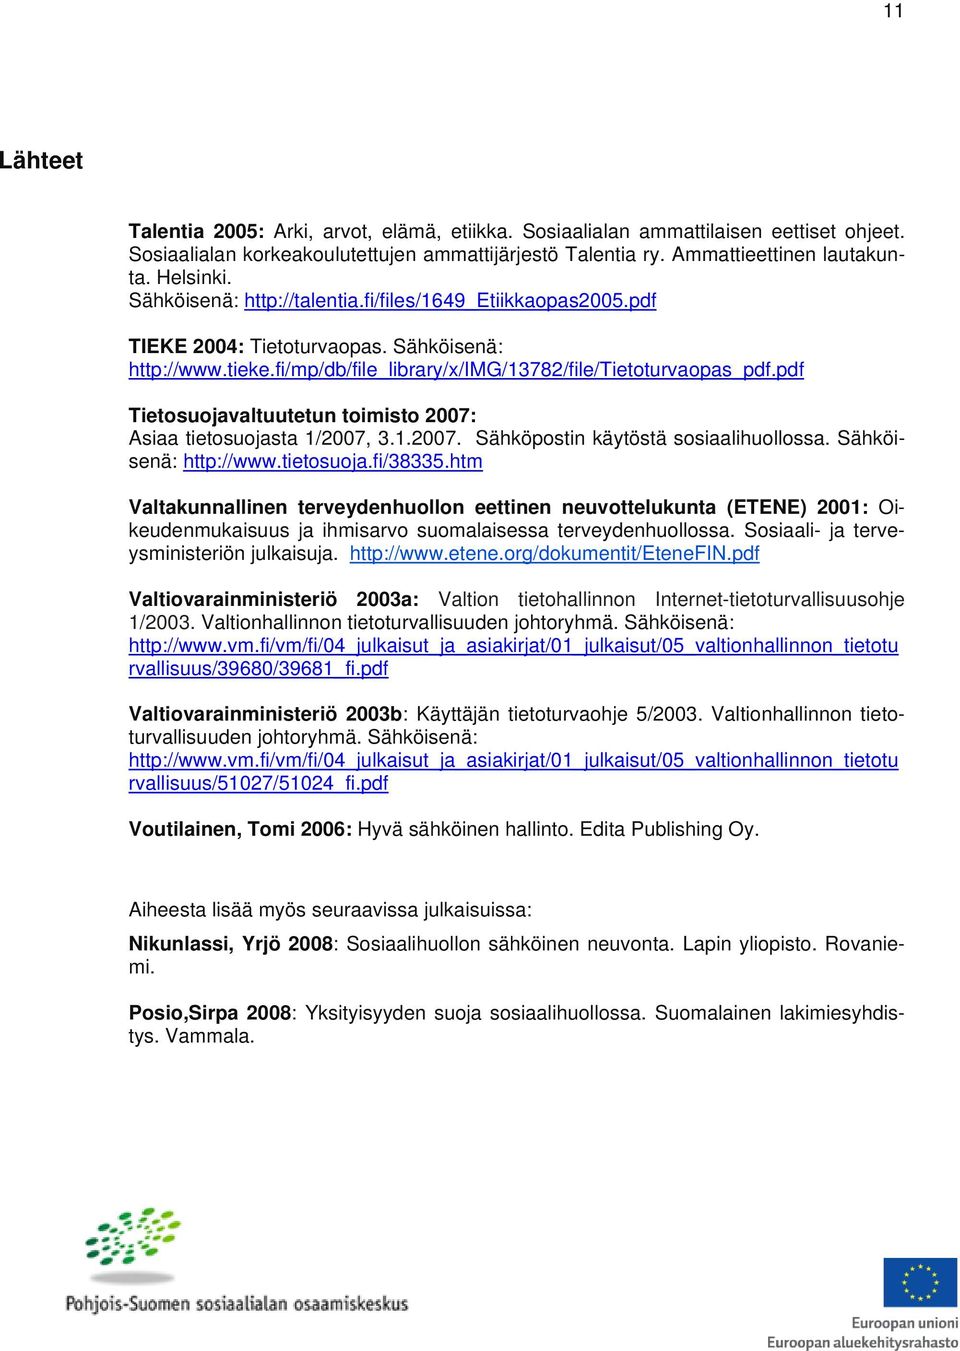 pdf Tietosuojavaltuutetun toimisto 2007: Asiaa tietosuojasta 1/2007, 3.1.2007. Sähköpostin käytöstä sosiaalihuollossa. Sähköisenä: http://www.tietosuoja.fi/38335.